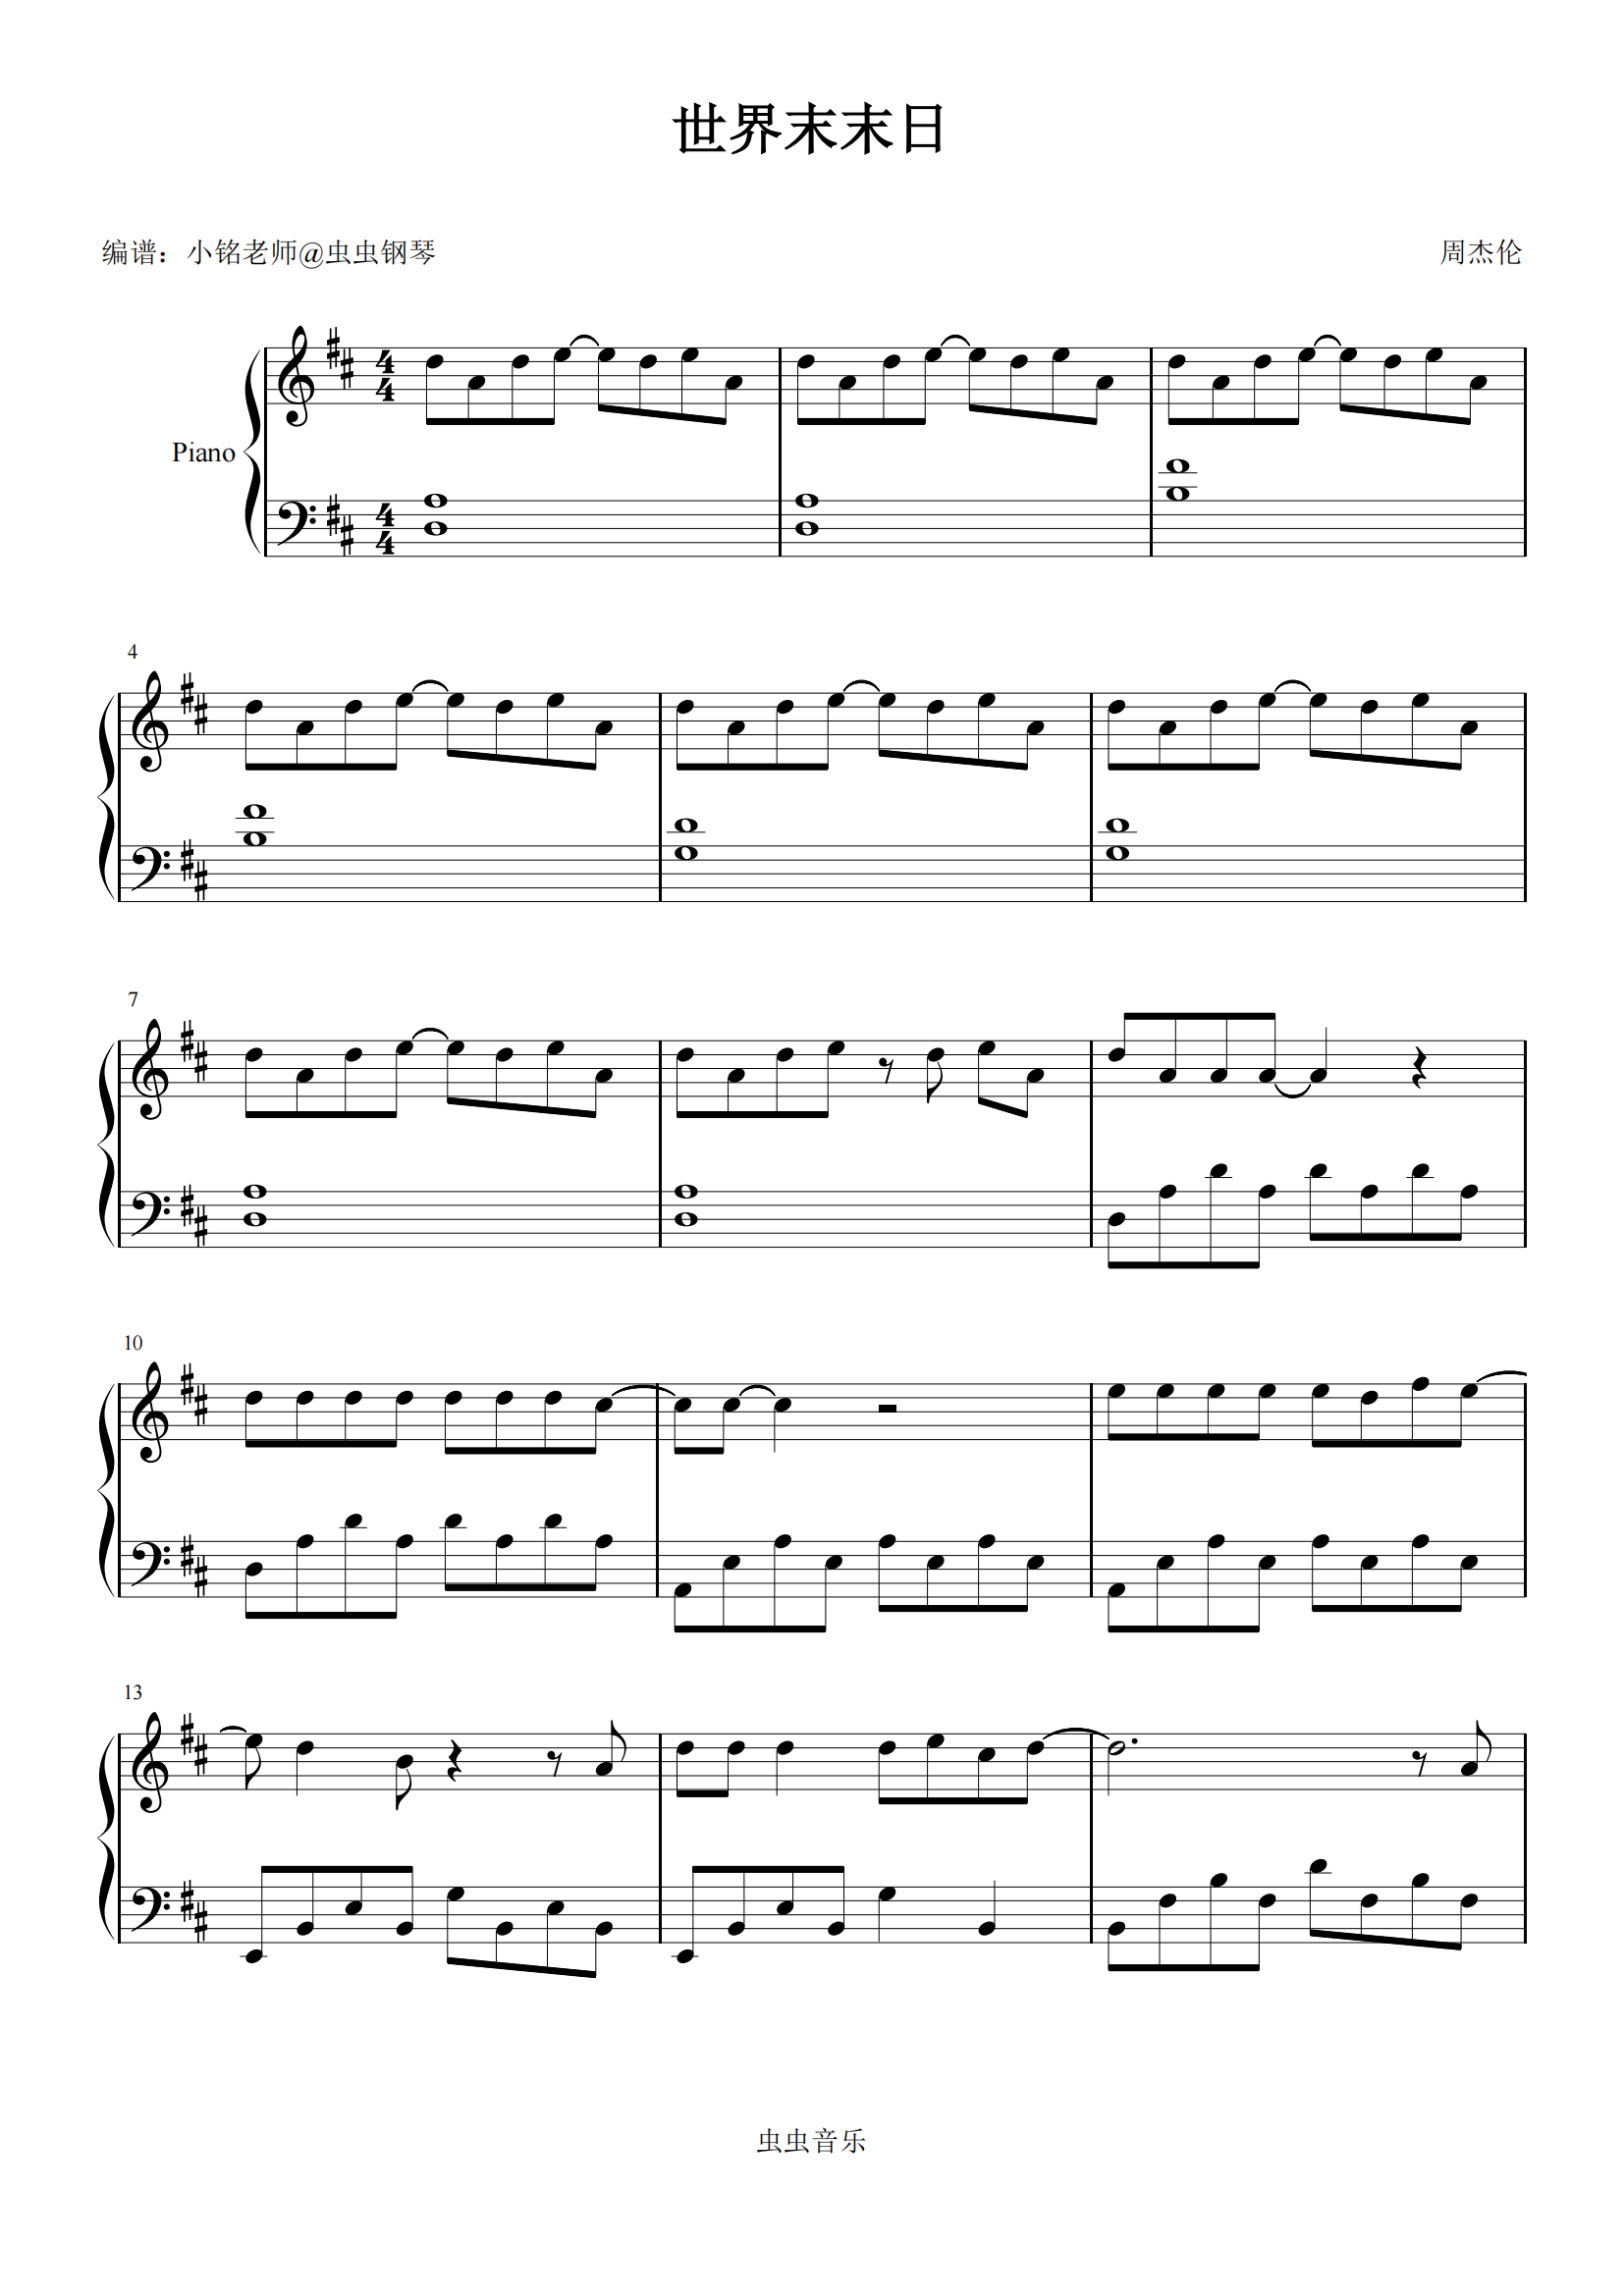 世界末日-周杰伦双手简谱预览1-钢琴谱文件（五线谱、双手简谱、数字谱、Midi、PDF）免费下载